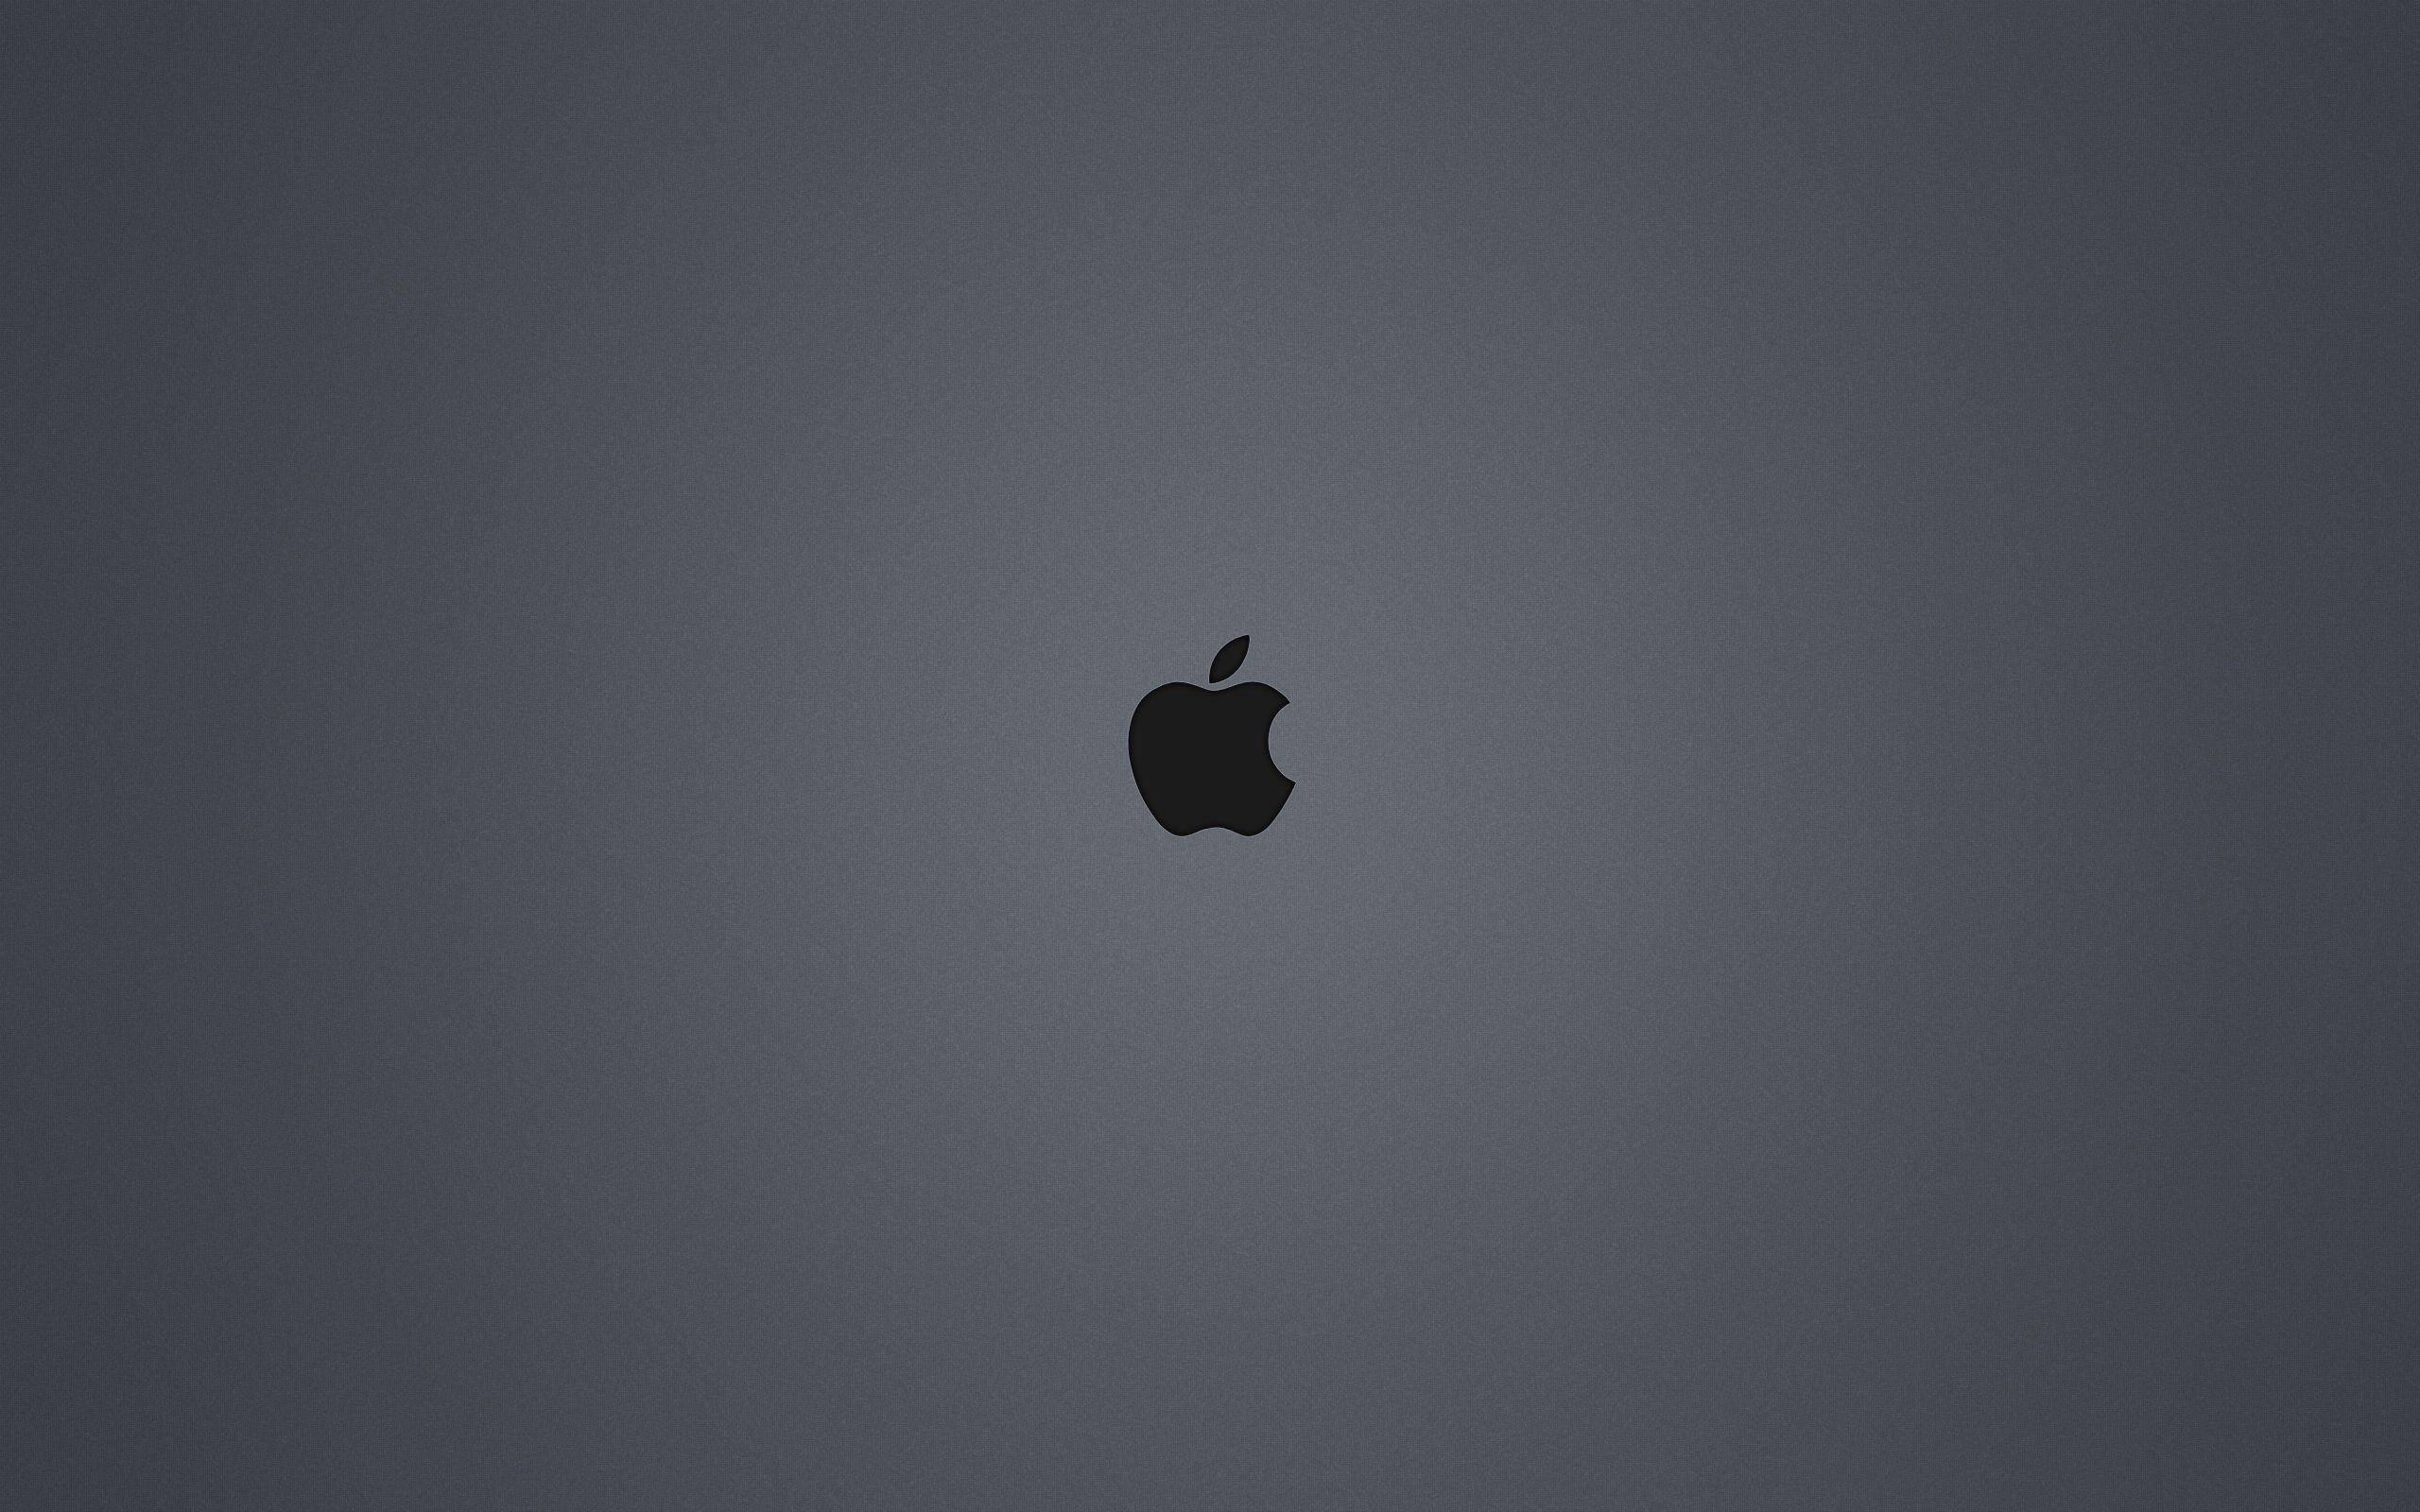 Apple 4K Wallpapers - Top Những Hình Ảnh Đẹp